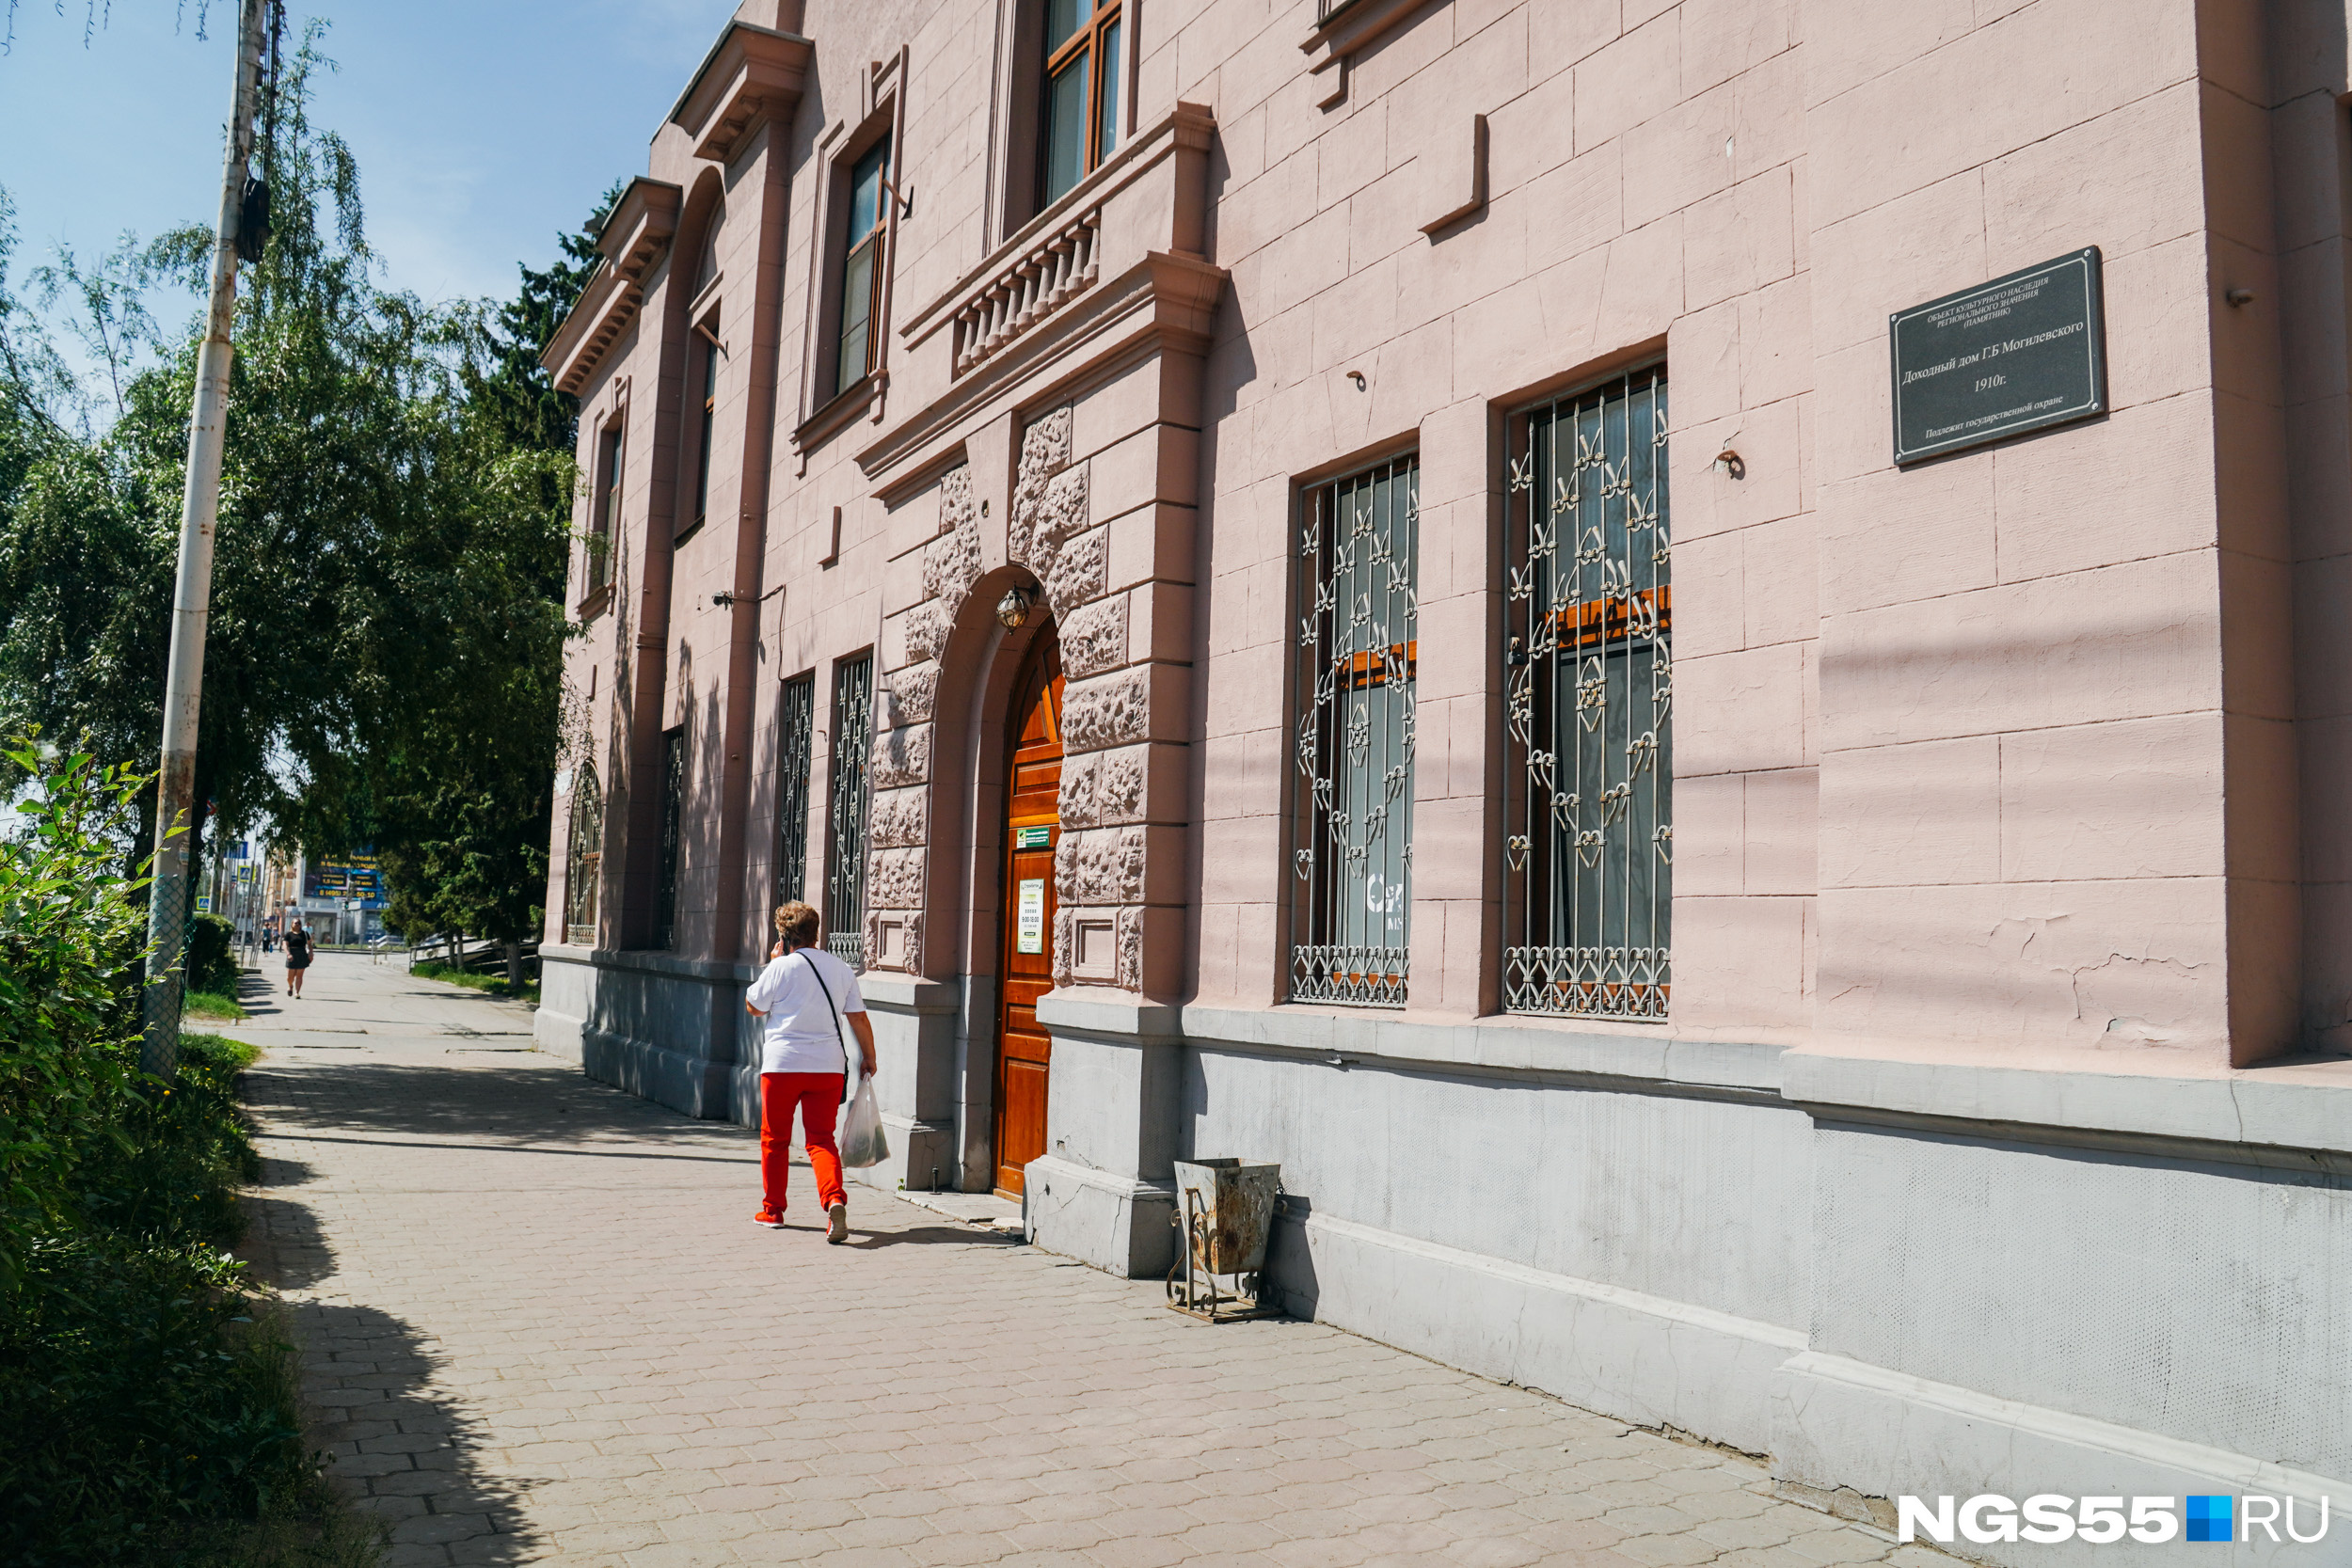 Само здание стоит по адресу: Герцена, 29 и является памятником истории — доходный дом предпринимателя Могилевского построили в 1910 году